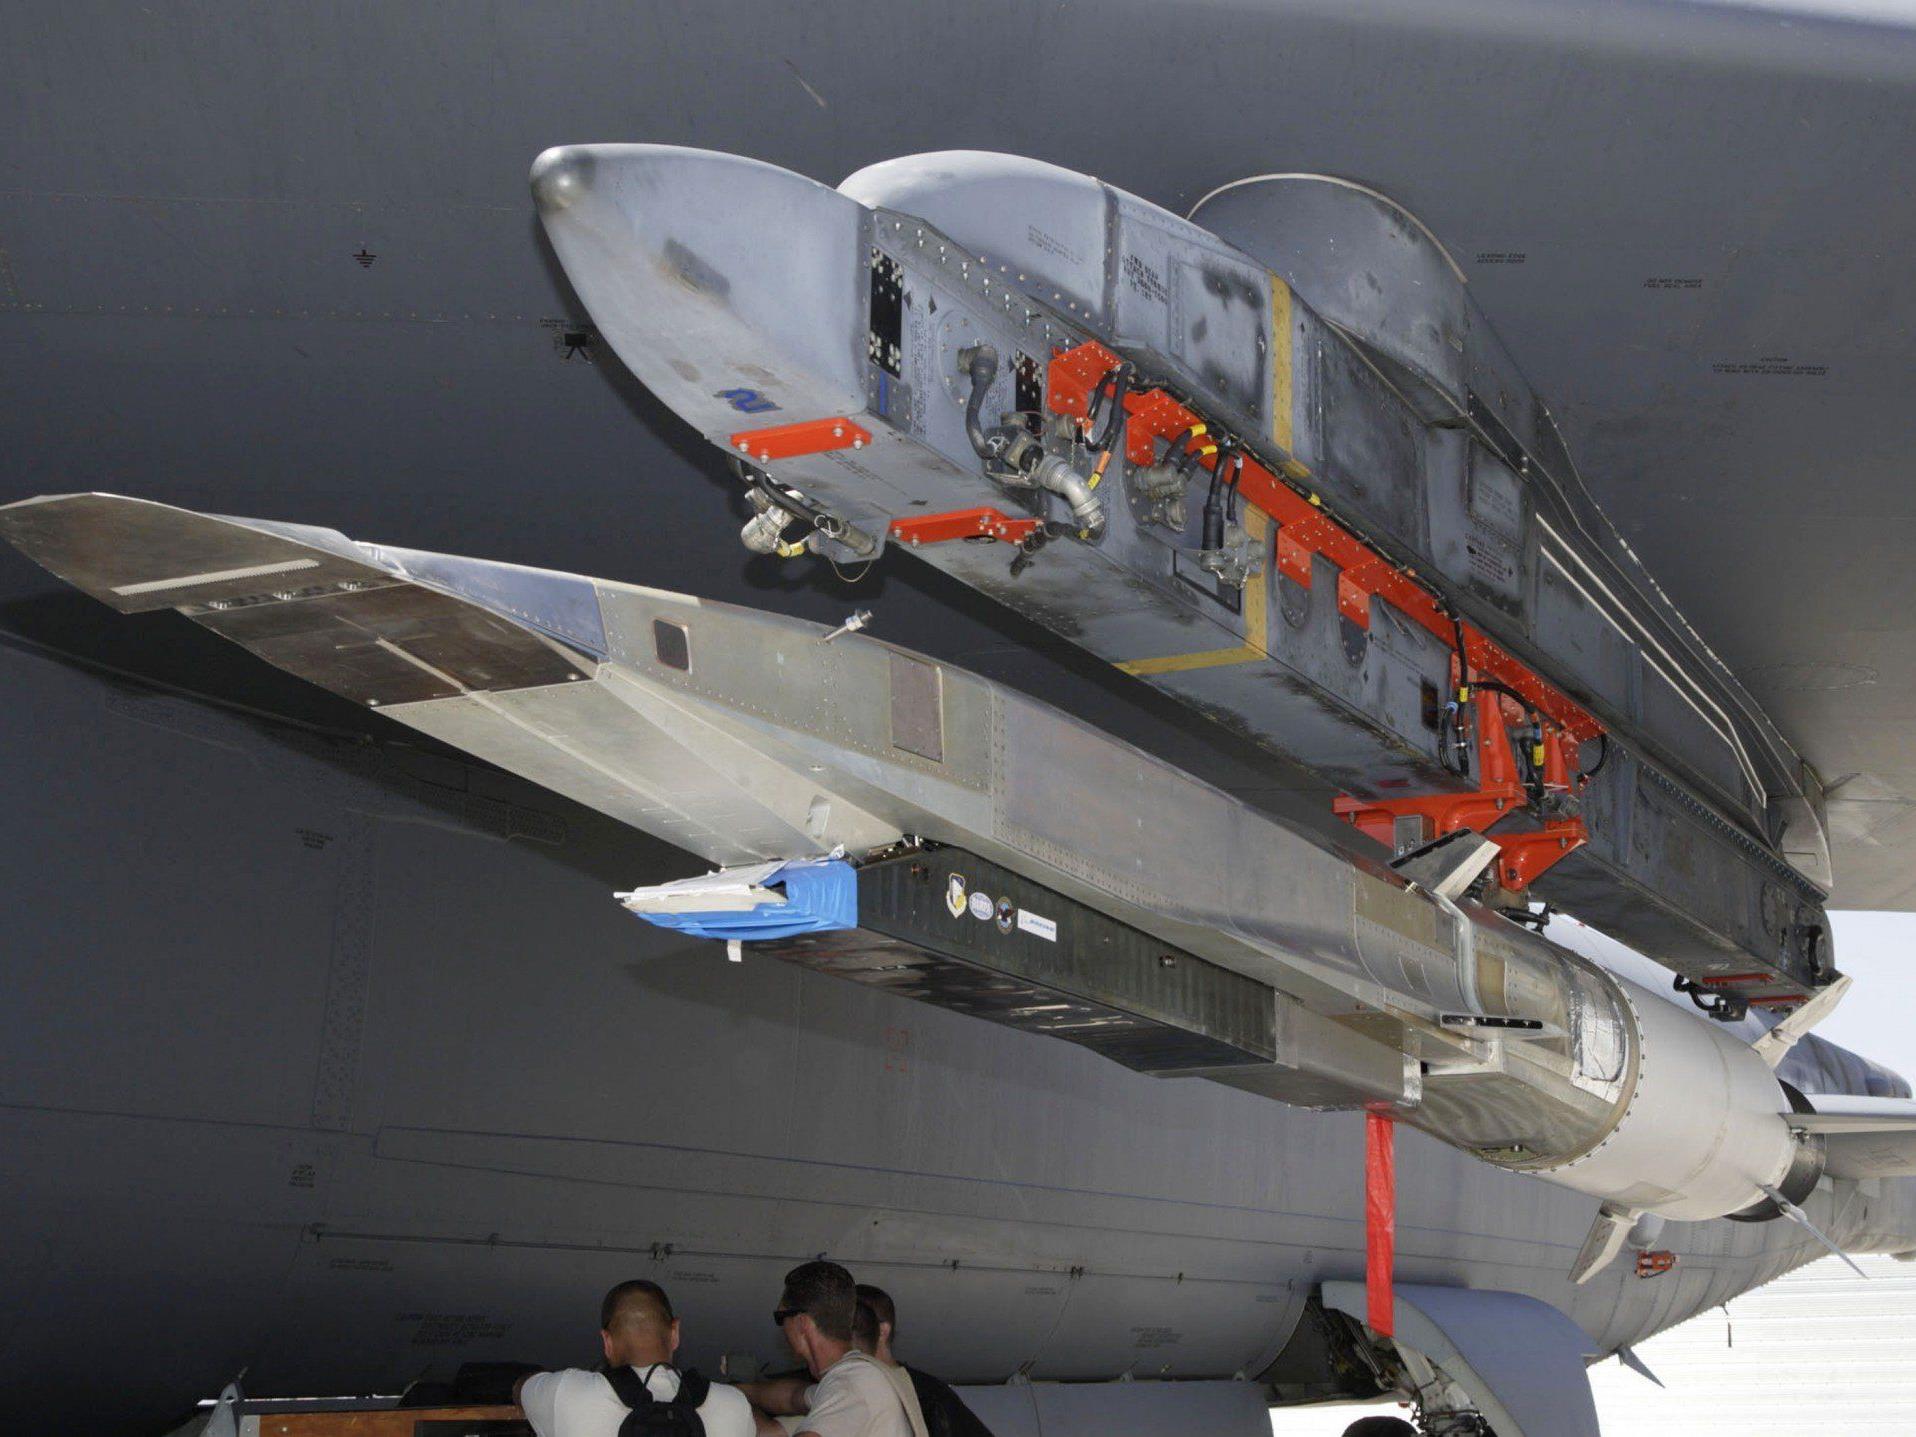 Hyperschall-Objekte, im Bild eine US-X-51A "WaveRider", sollen Angriffe auf weit entfernte Ziele binnen kürzester Zeit möglich machen.